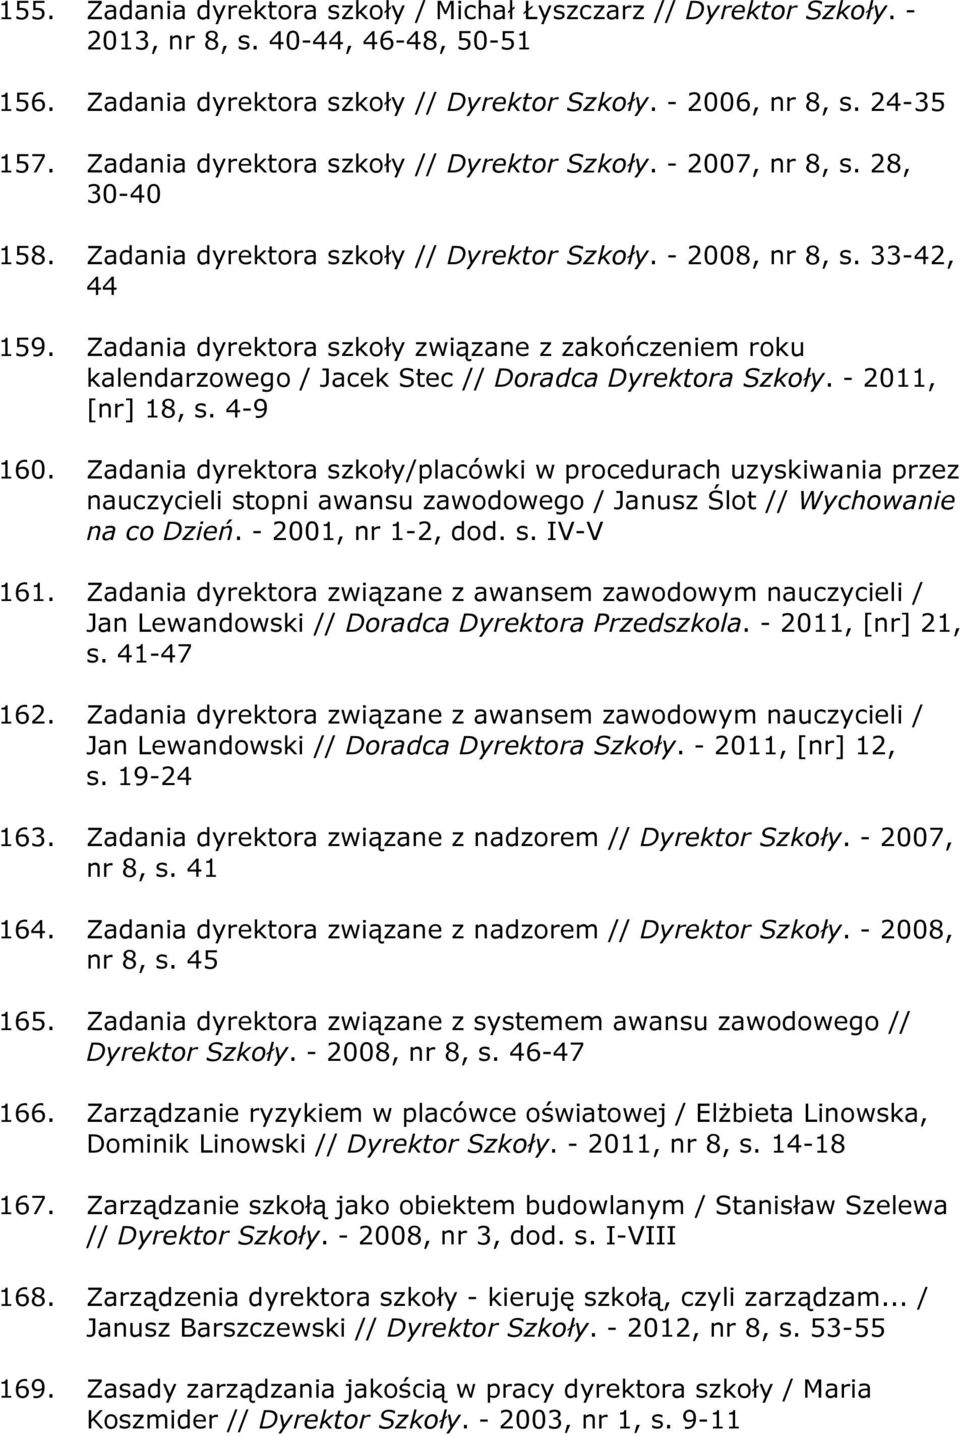 Zadania dyrektora szkoły związane z zakończeniem roku kalendarzowego / Jacek Stec // Doradca Dyrektora Szkoły. - 2011, [nr] 18, s. 4-9 160.